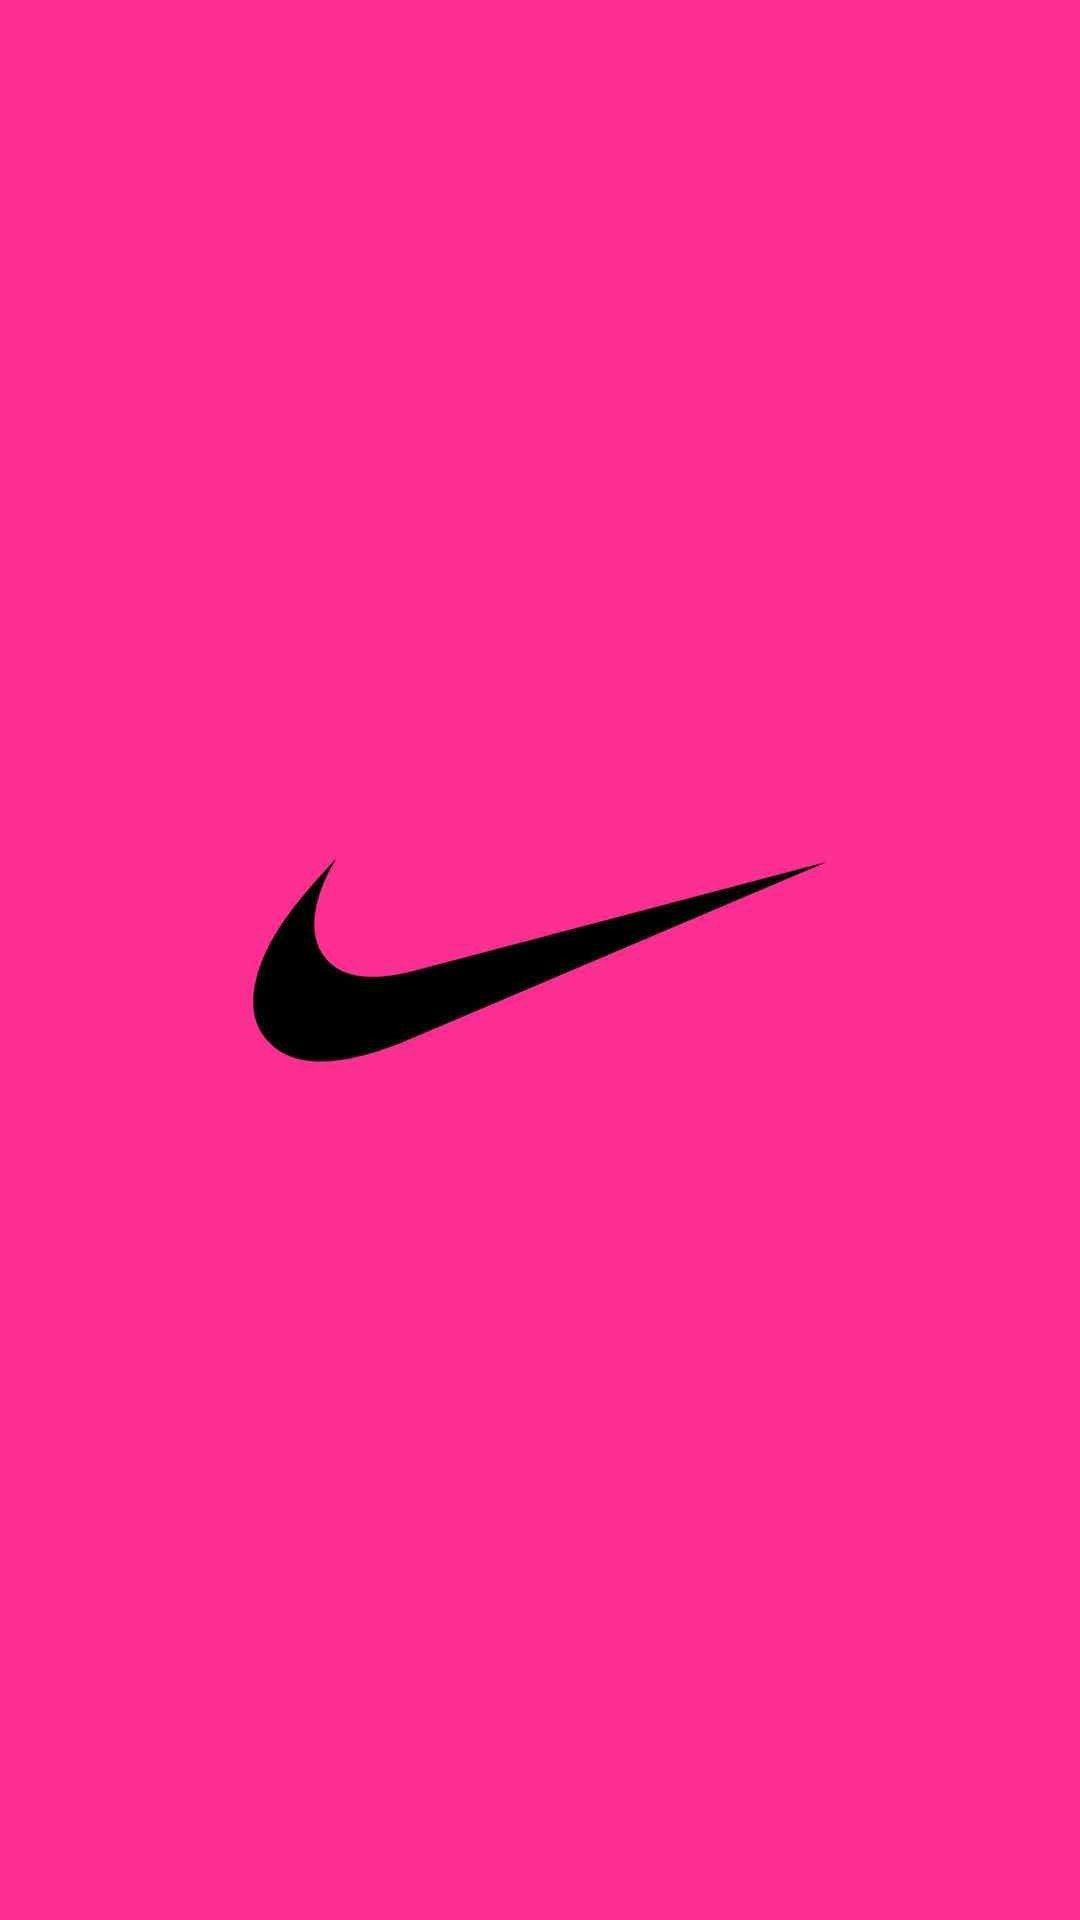 Nike: Để thể hiện tinh thần thể thao và phong cách cá tính, hãy truy cập để ngắm nhìn bộ sưu tập giày Nike đầy khí chất và sự đẳng cấp! Pink: Với tông màu hồng tươi tắn và quyến rũ, những bức ảnh liên quan đến màu hồng chắc chắn sẽ khiến bạn trở nên cuốn hút và phấn khích hơn bao giờ hết! Wallpaper: Hình nền là một yếu tố quan trọng để tạo nên phong cách và thể hiện cá tính của bạn. Hãy khám phá ngay bộ sưu tập hình nền đẹp lung linh để cập nhật cho màn hình của bạn nhé! Girly: Điểm danh những cô nàng sành điệu và yêu thích phong cách nữ tính! Hình ảnh liên quan đến phong cách girly sẽ khiến bạn rất thích thú và muốn thử ngay! Logo: Logo là yếu tố quan trọng để tạo nên sự chuyên nghiệp và đẳng cấp của một thương hiệu. Cùng ngắm nhìn những bức ảnh về logo của các thương hiệu nổi tiếng để hiểu hơn về giá trị của chúng nhé!